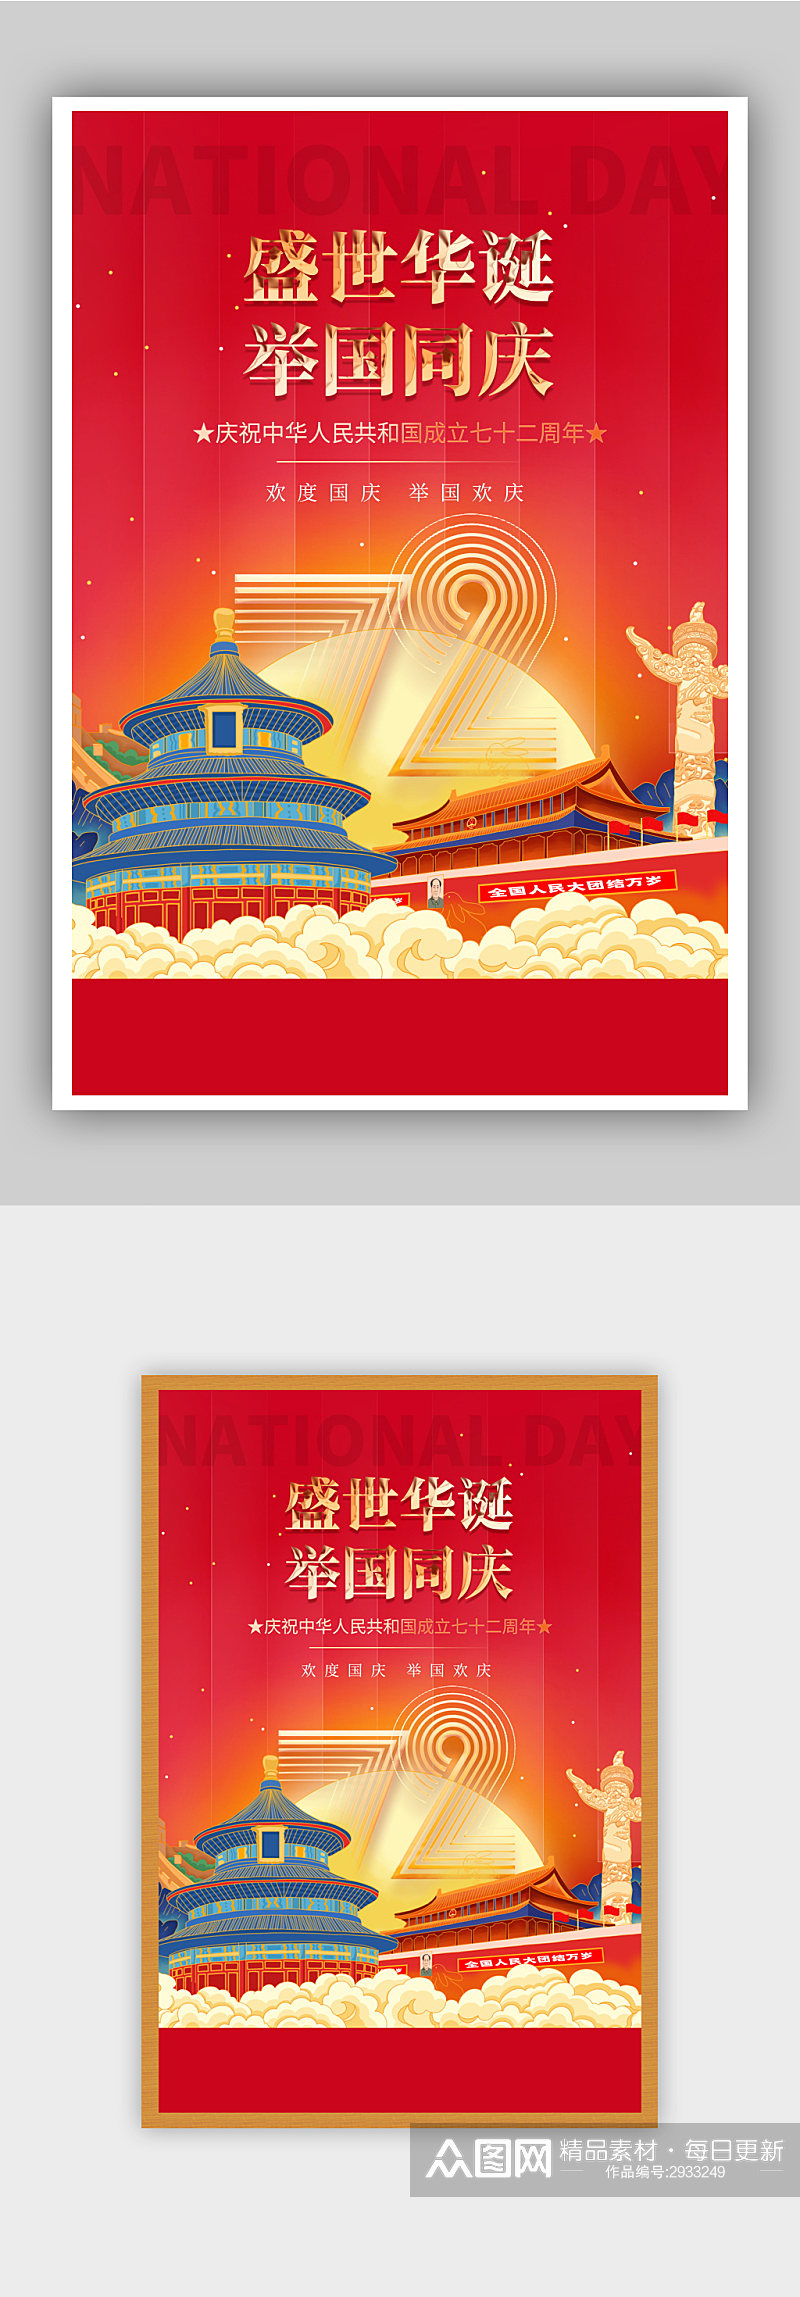 国庆节建国72周年主题海报素材